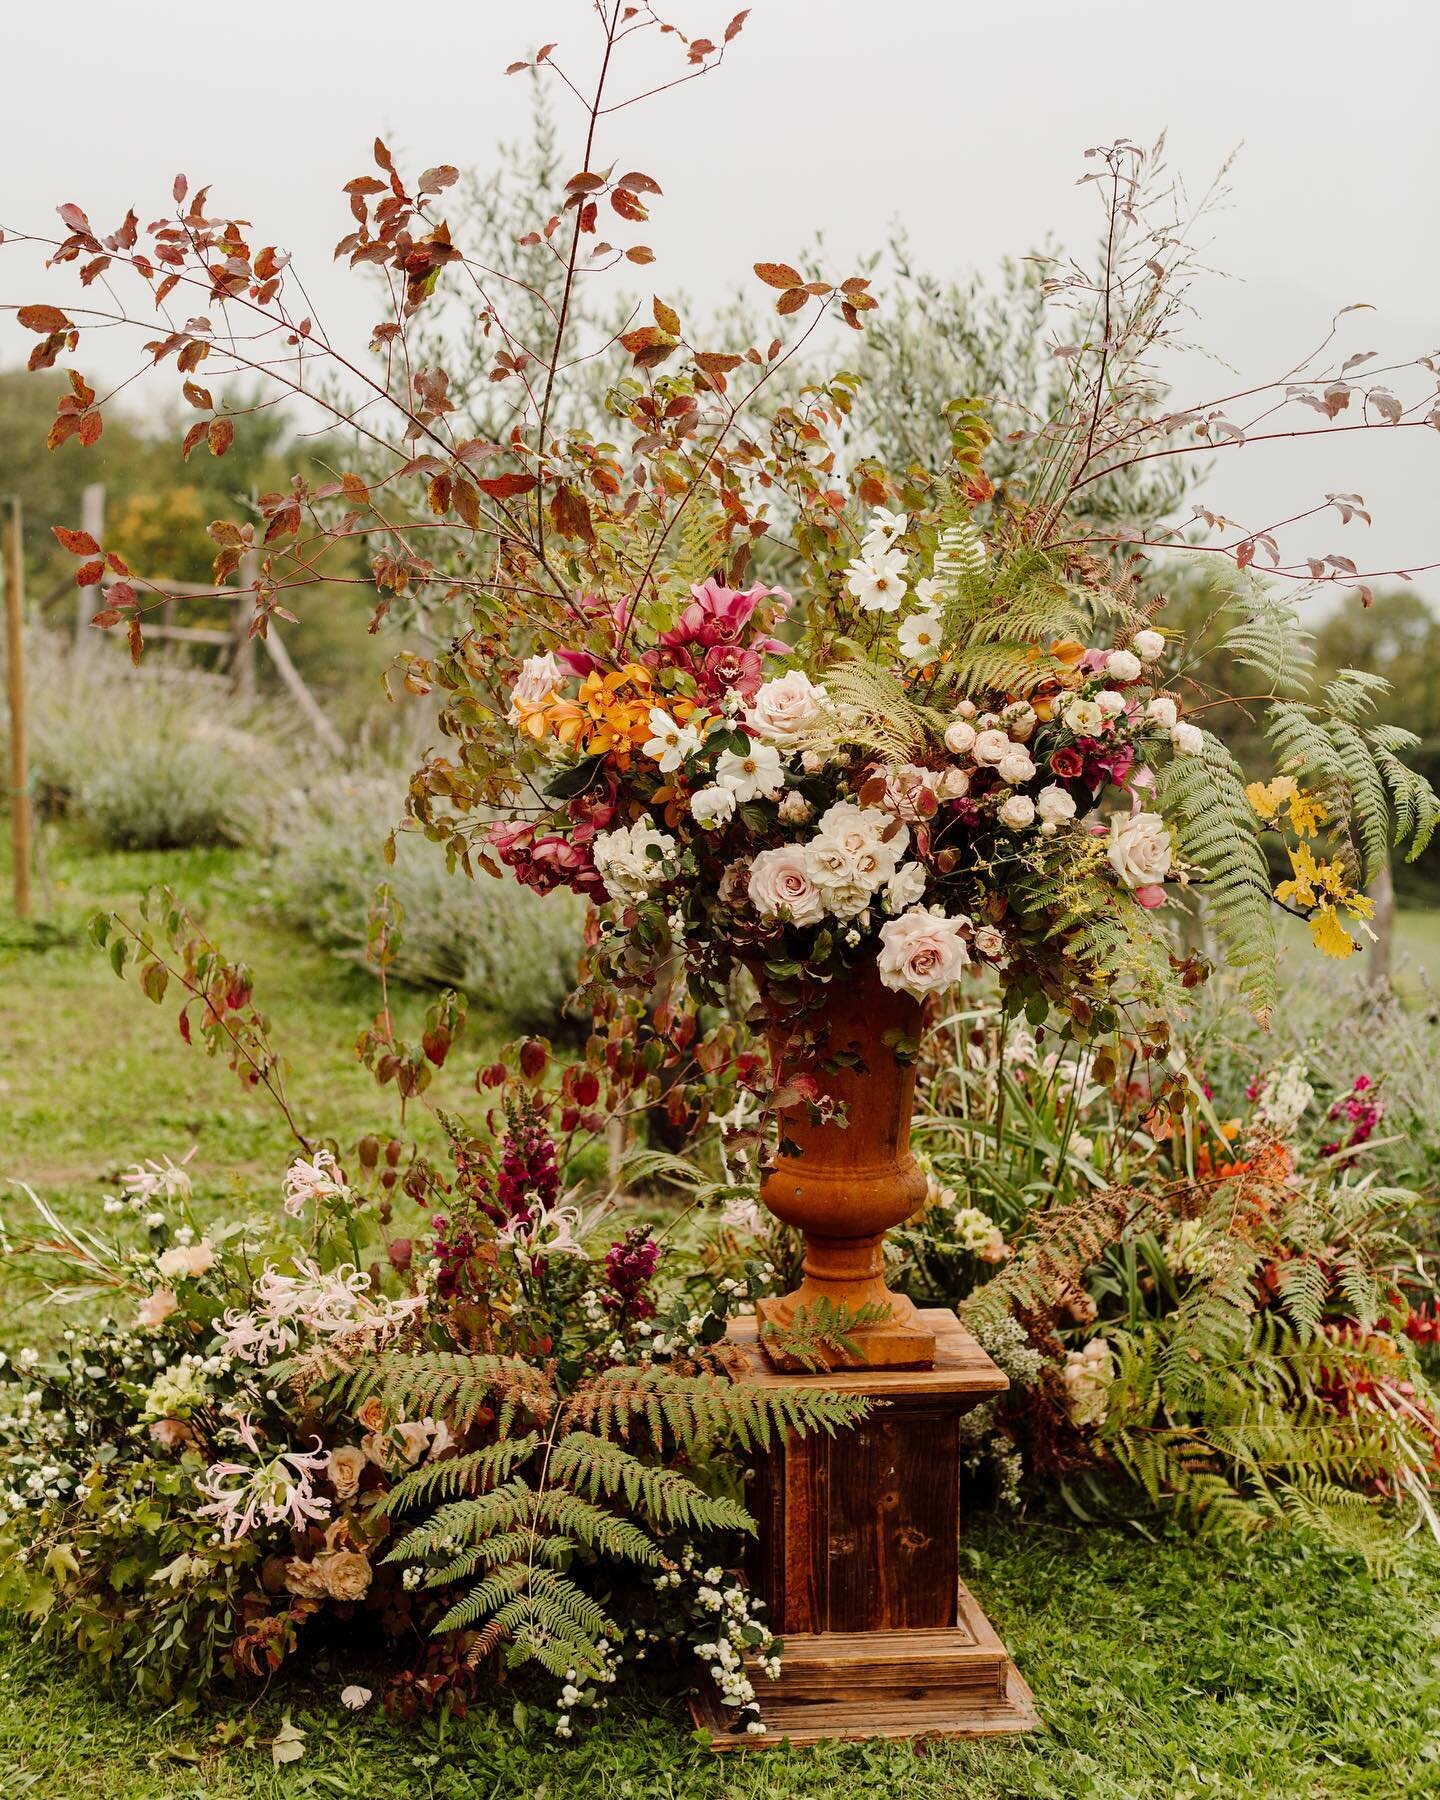 &ldquo;L'automne est un printemps II o&ugrave; chaque feuille est une fleur.&rdquo; Albert Camus  Photo: @karenobrist 
・・・⠀⠀⠀⠀⠀⠀⠀⠀⠀⠀⠀⠀ ⠀⠀⠀⠀⠀⠀⠀⠀⠀⠀⠀⠀ ⠀⠀⠀⠀⠀⠀⠀⠀⠀⠀⠀ ⠀⠀⠀⠀⠀⠀⠀⠀⠀⠀⠀ 
Planning/styling: @together.events
Venue: @podereconti
Floral: @larosacaninaf